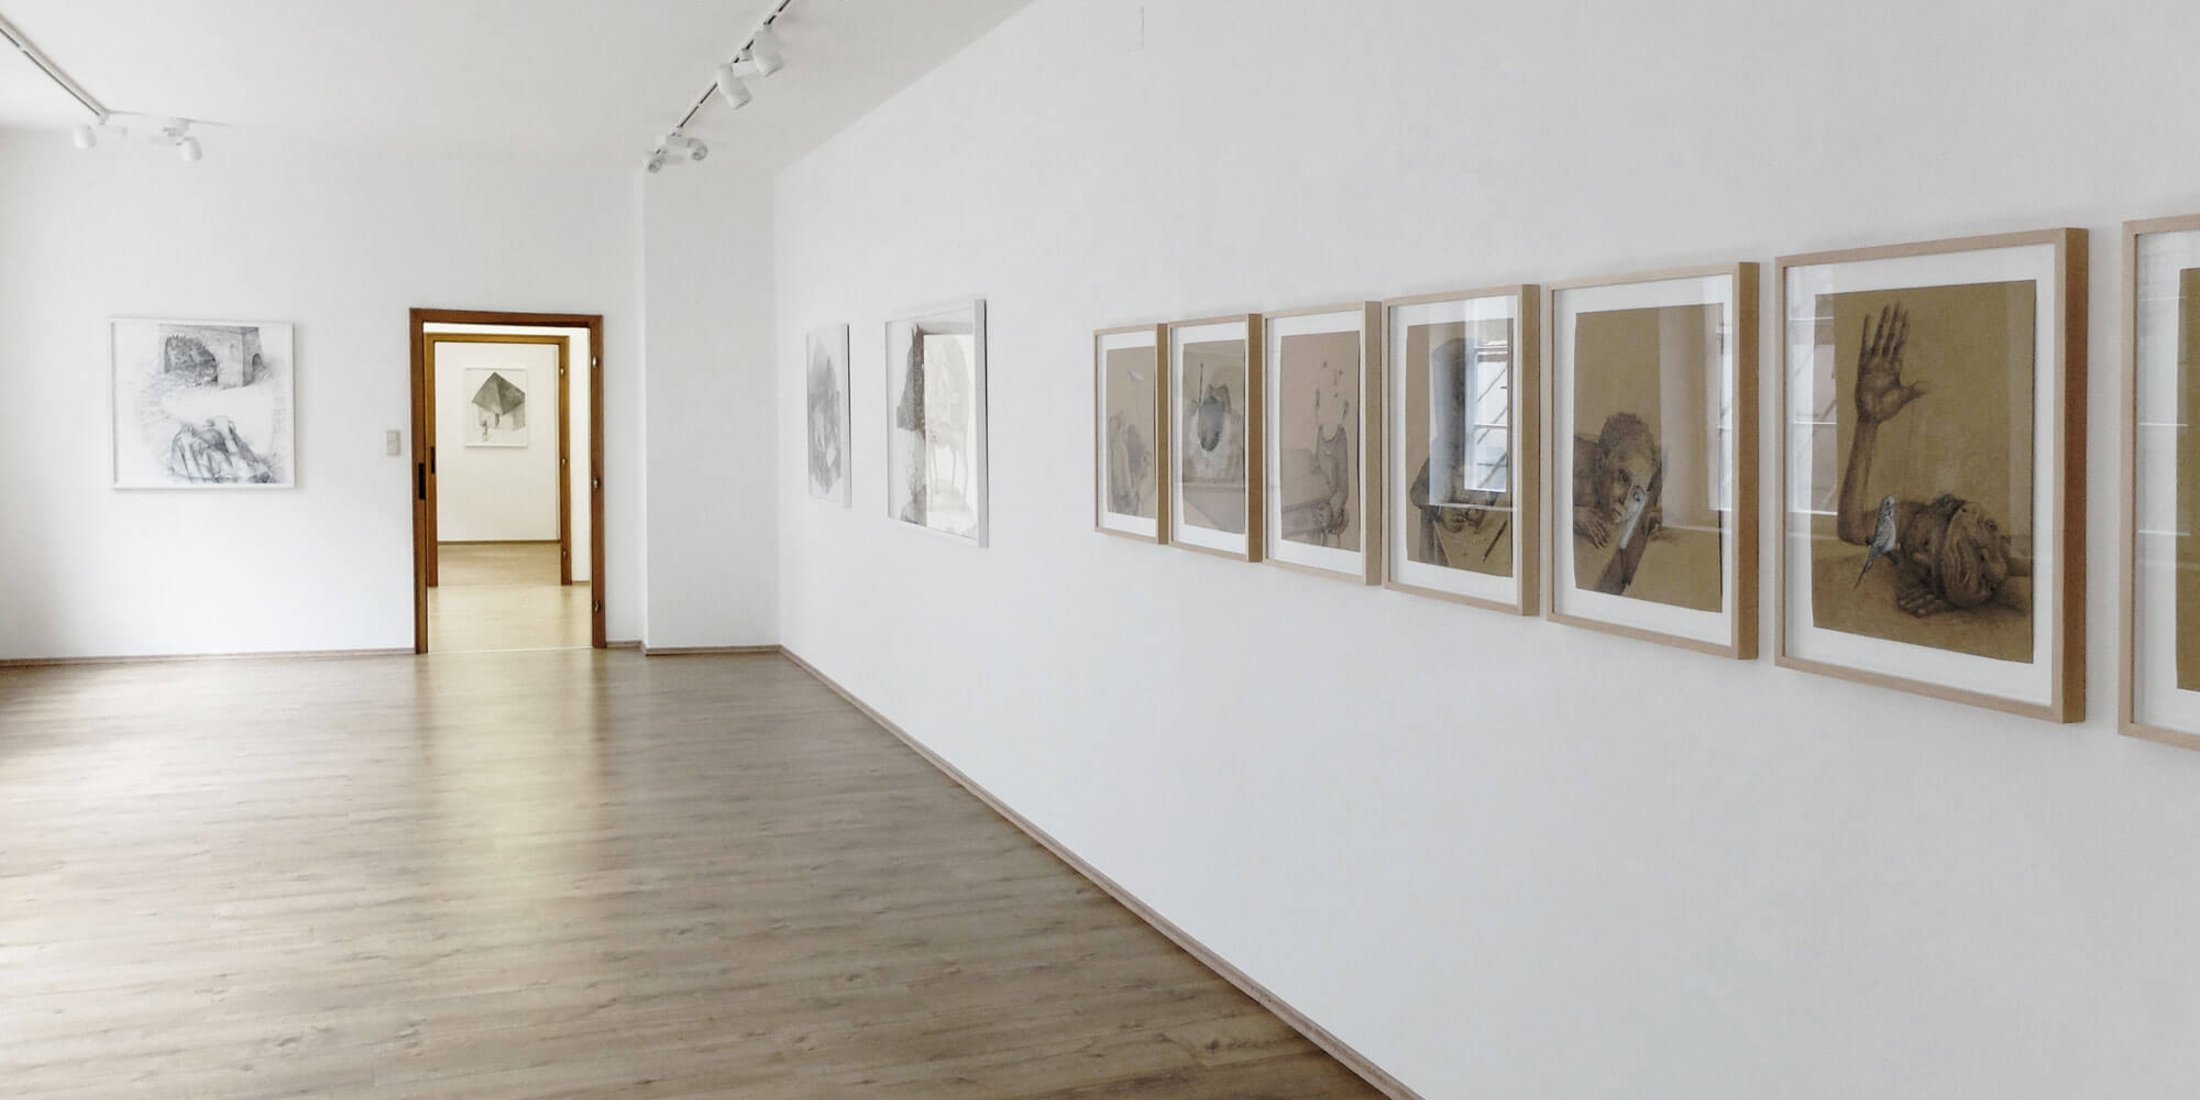  Stefan Zsaitsits Exhibition Ausstellung Galerie Gallery Trapp Salzburg